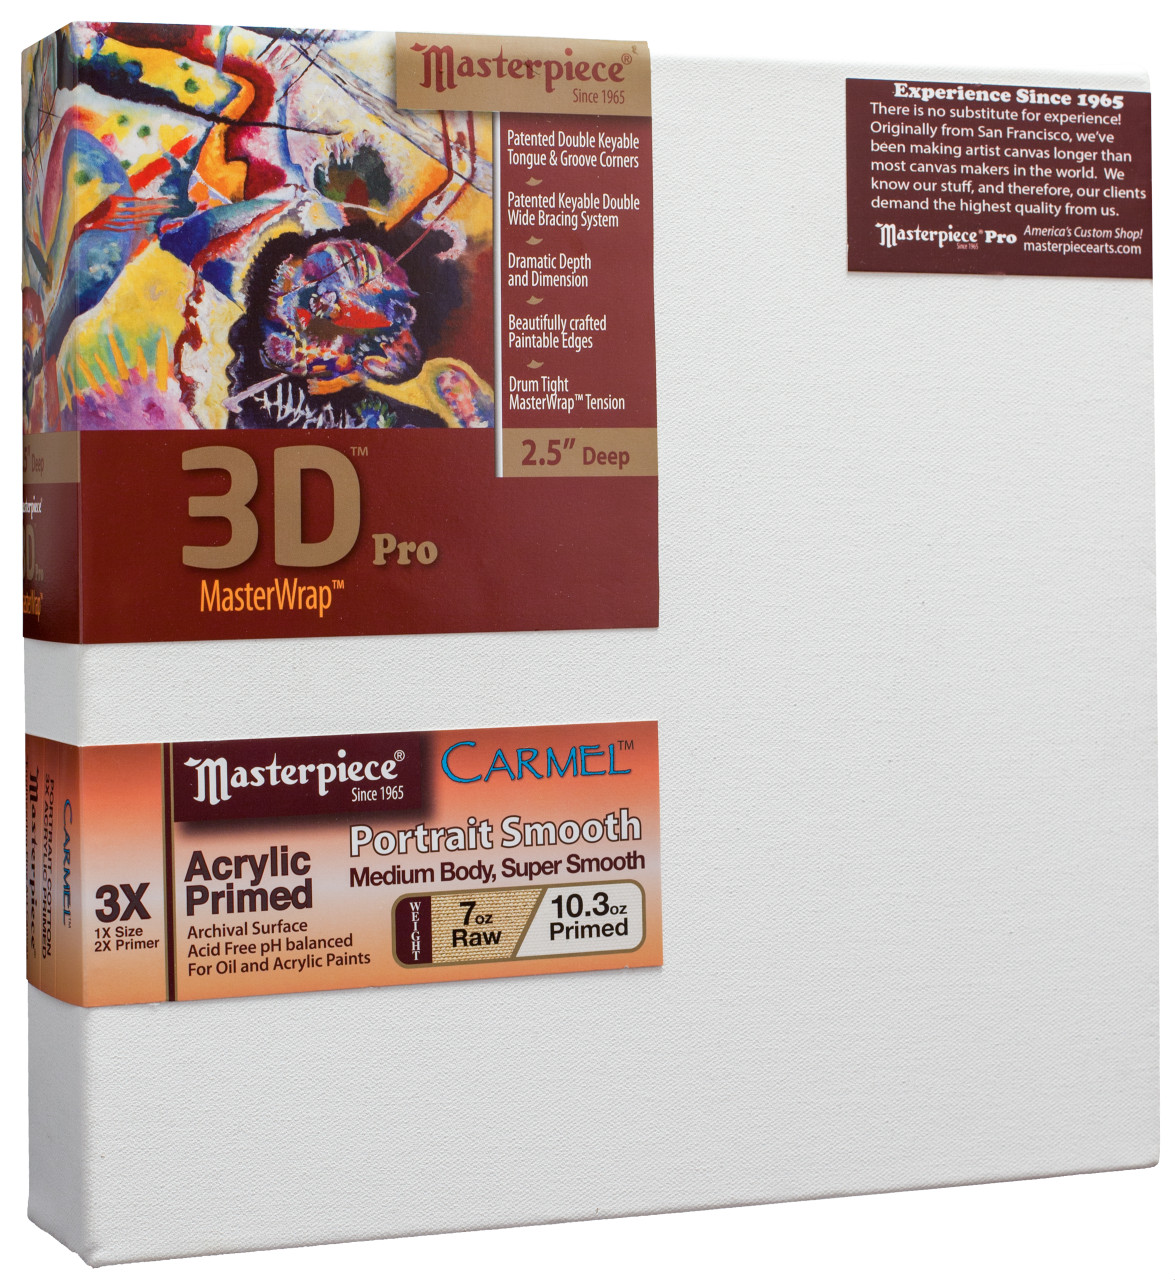 3D Pro 2.5 Deep Artist Canvas 9x12